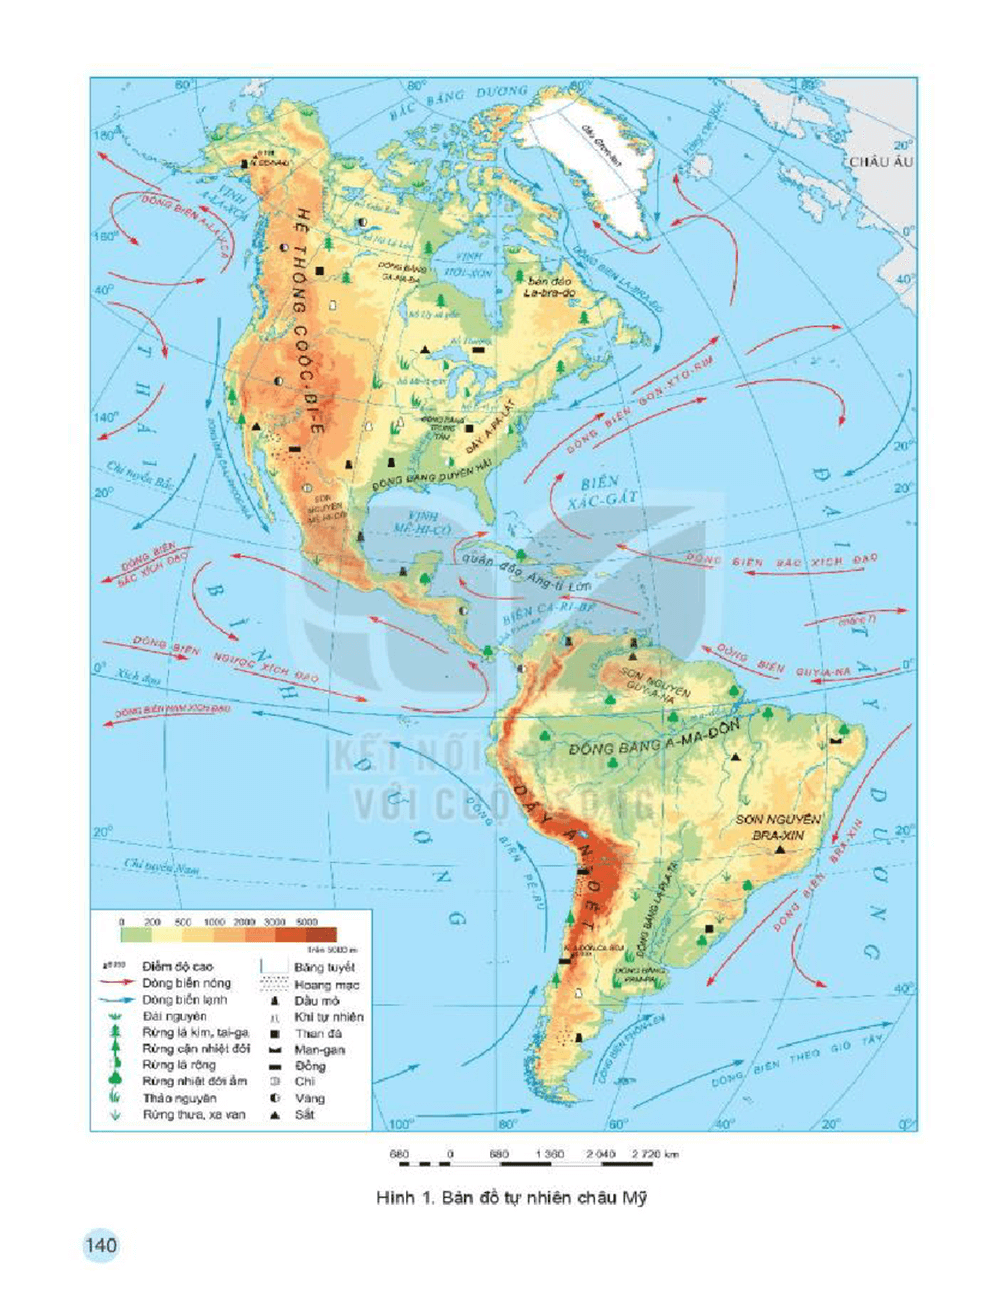 Dựa vào bản đồ tự nhiên châu Mỹ trang 140, hãy cho biết